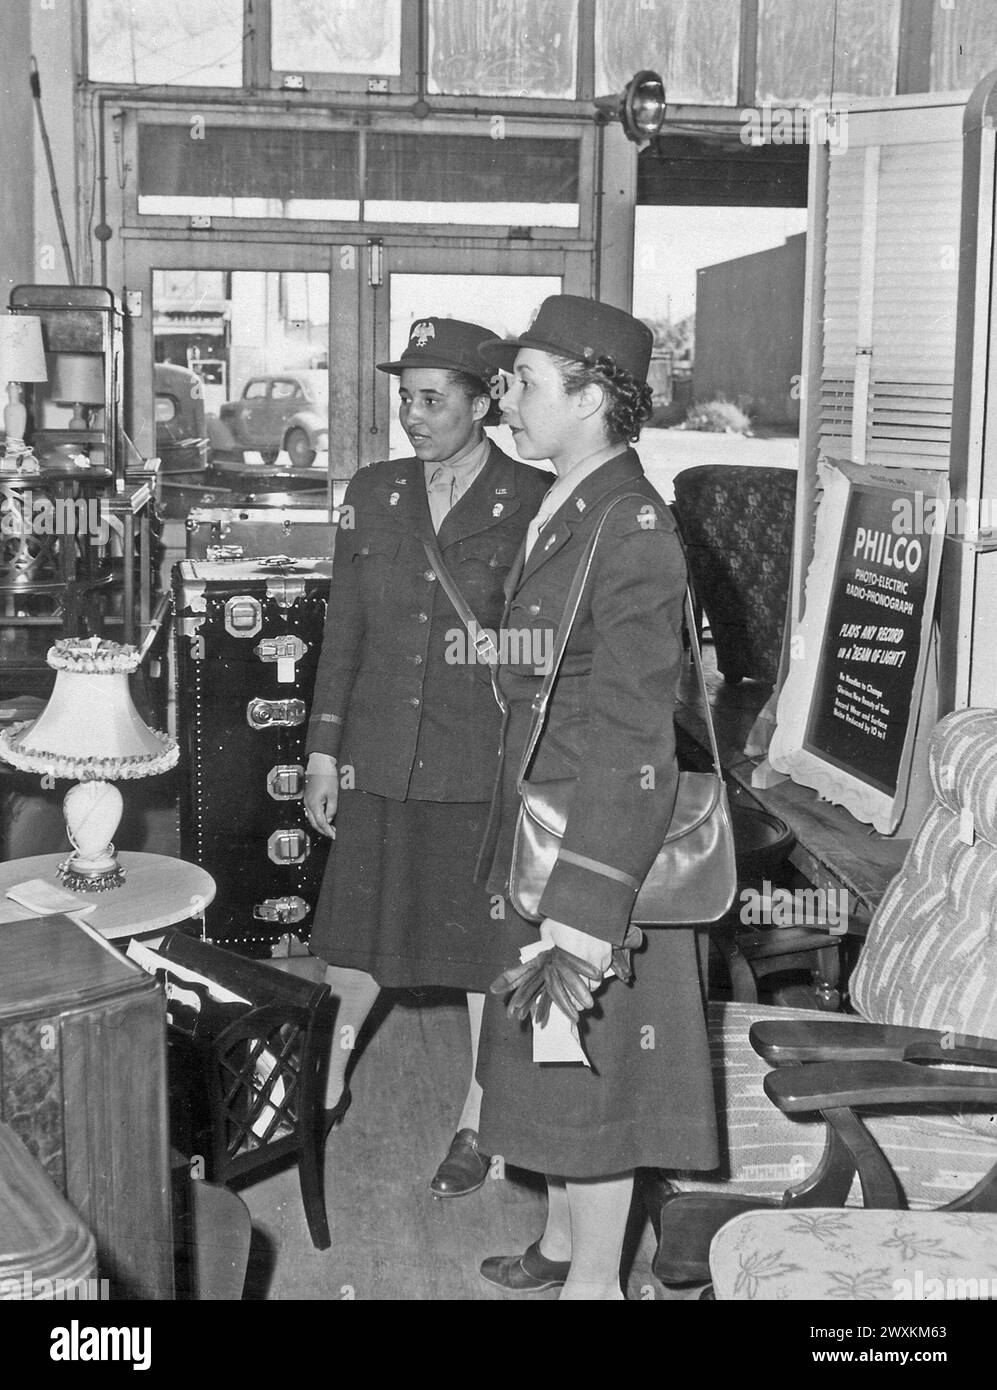 Les officiers de la WAAC vont faire du shopping... peu après leur arrivée à Fort Huachuca, Arizona, ces deux officiers ont commencé à acheter des lampes et autres accessoires nécessaires dans leur salle de loisirs CA. 1942 Banque D'Images